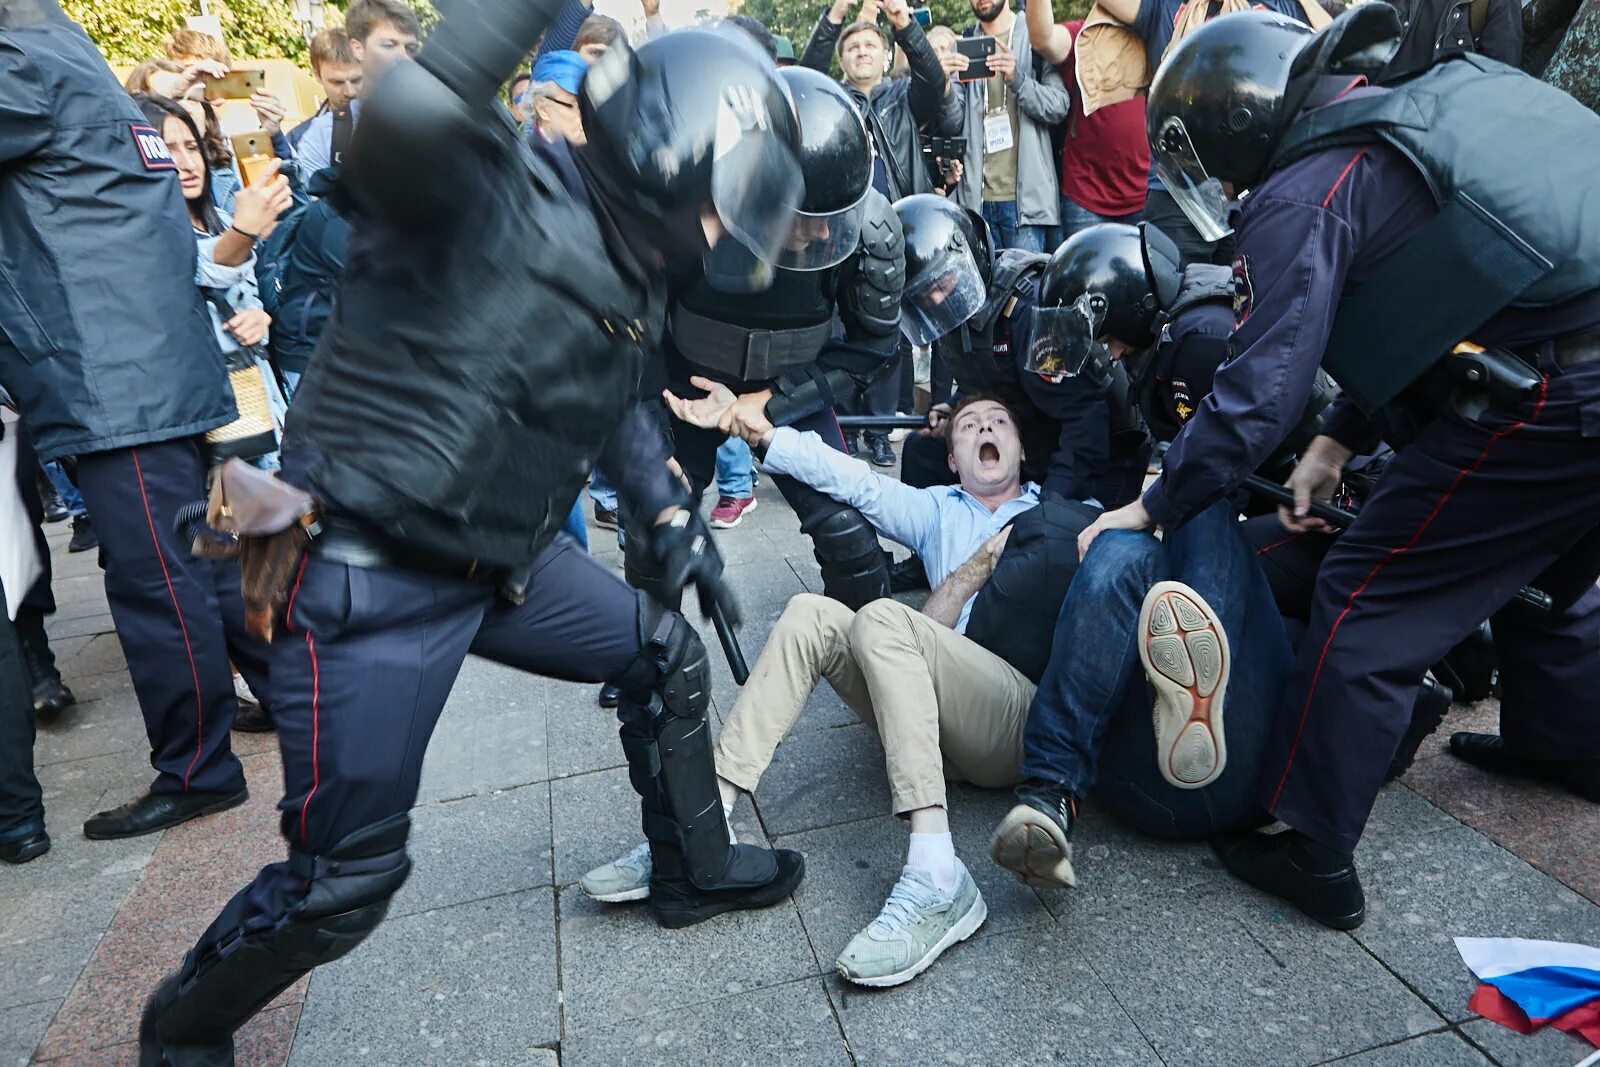 Бьют омон. Полиция избивает митингующих. Разгон демонстрации в Москве.